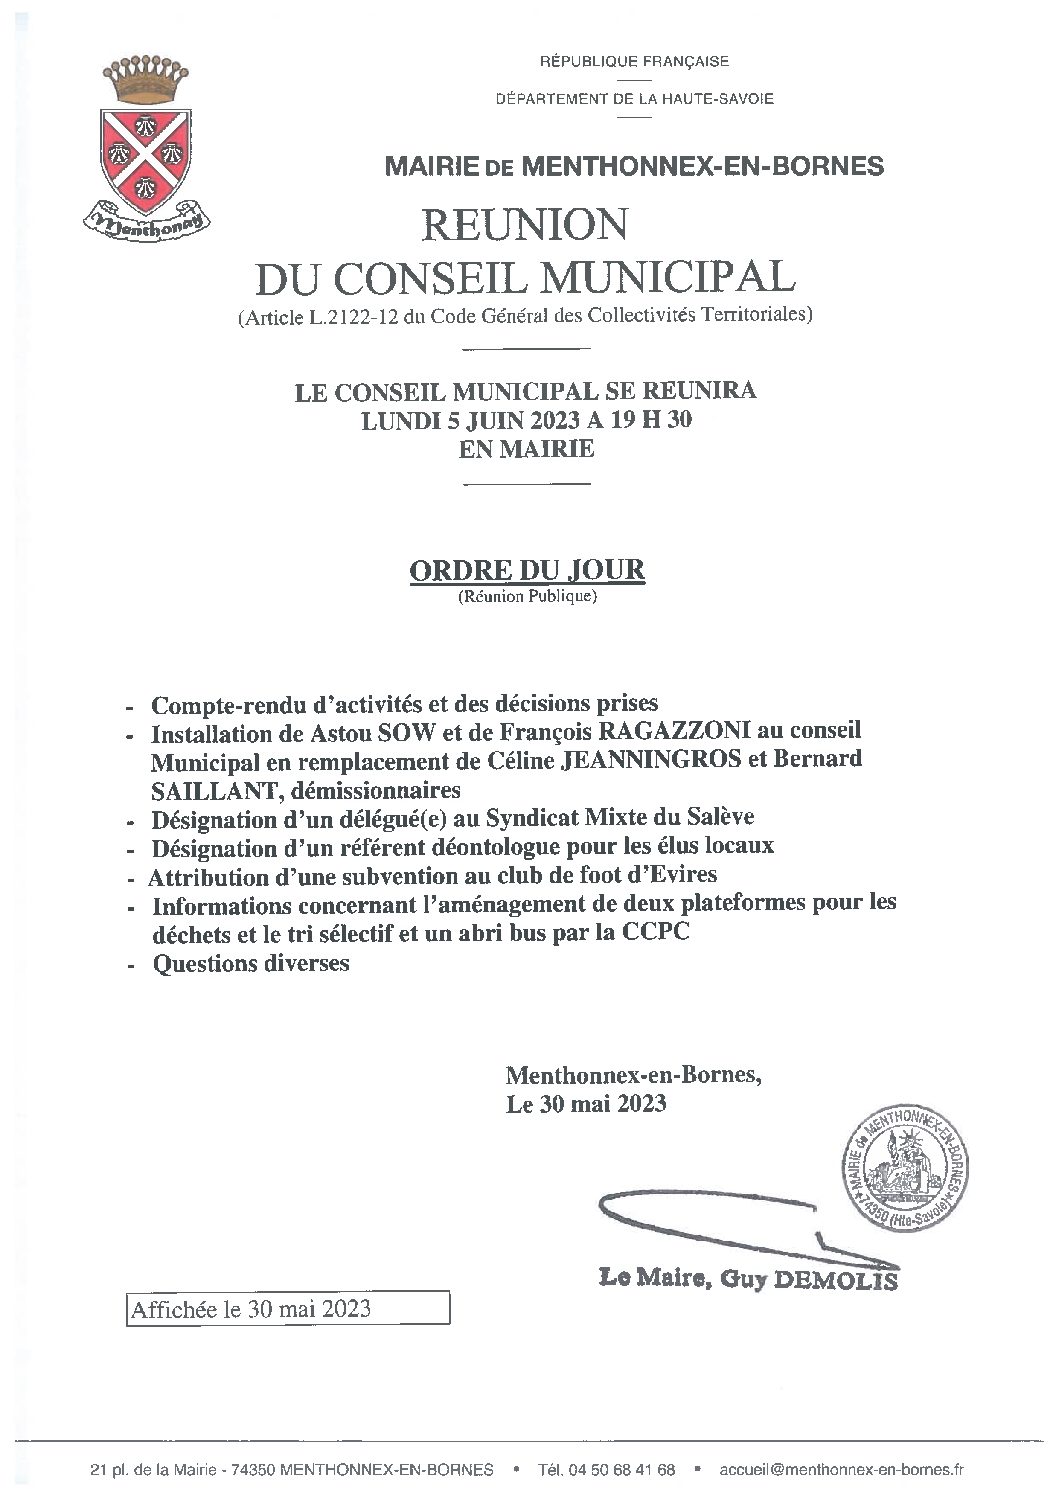 Ordre du jour du conseil municipal du 4 septembre 2023